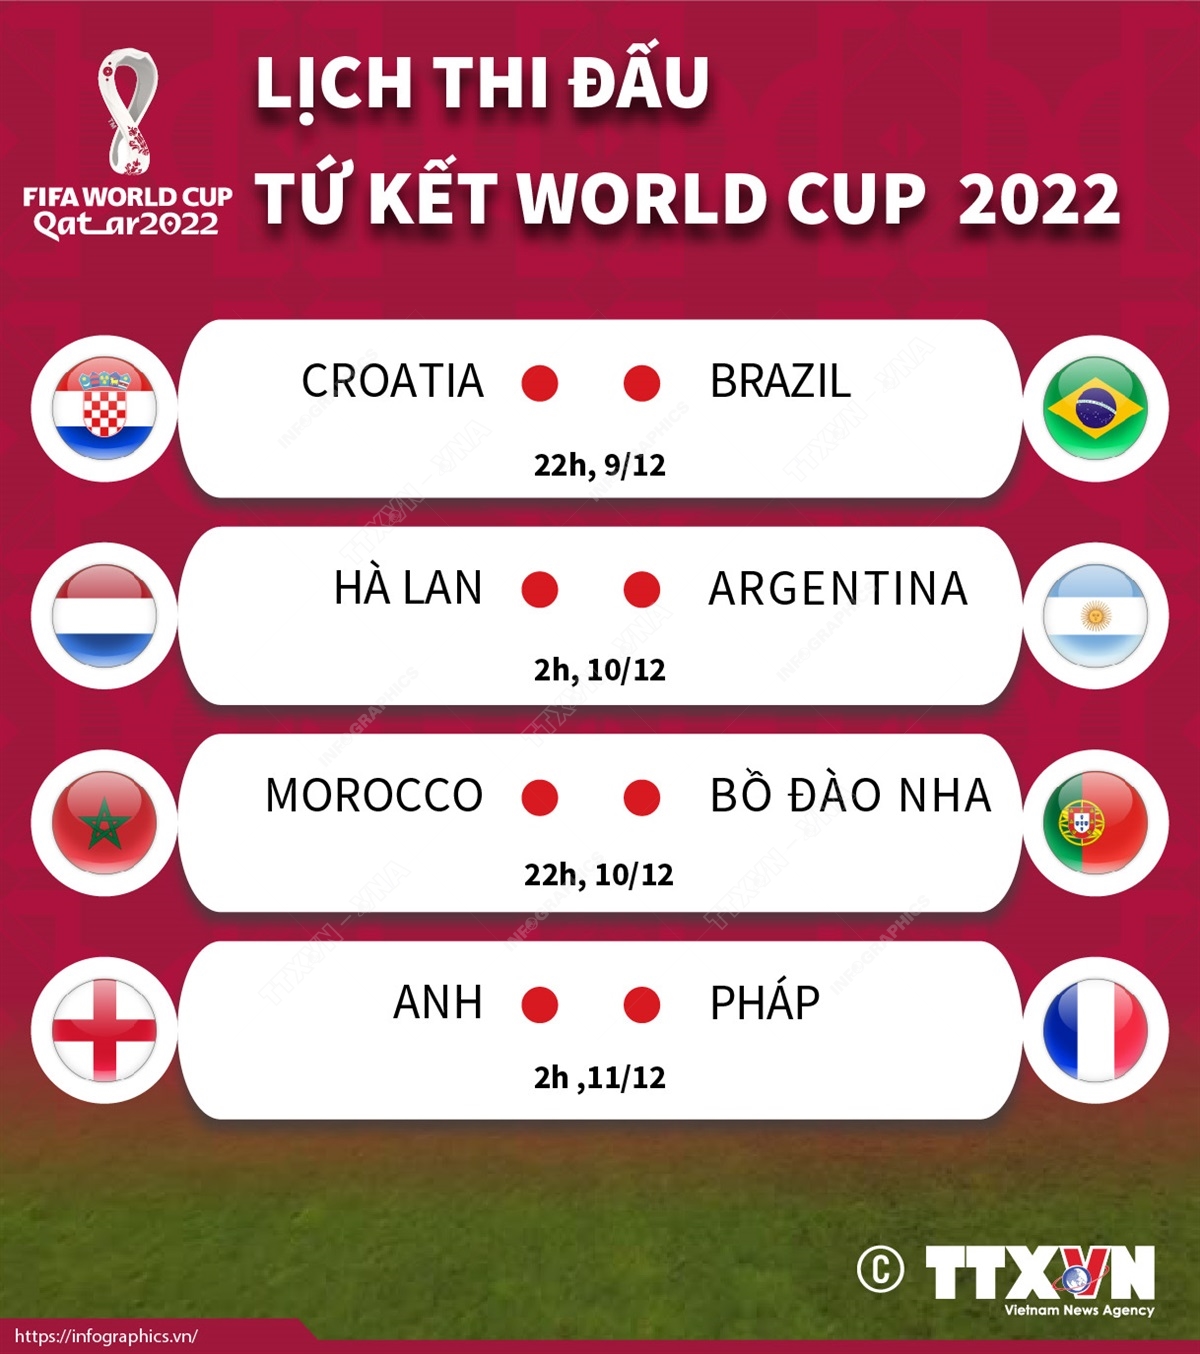 BVPL: Lịch thi đấu vòng tứ kết World Cup 2022